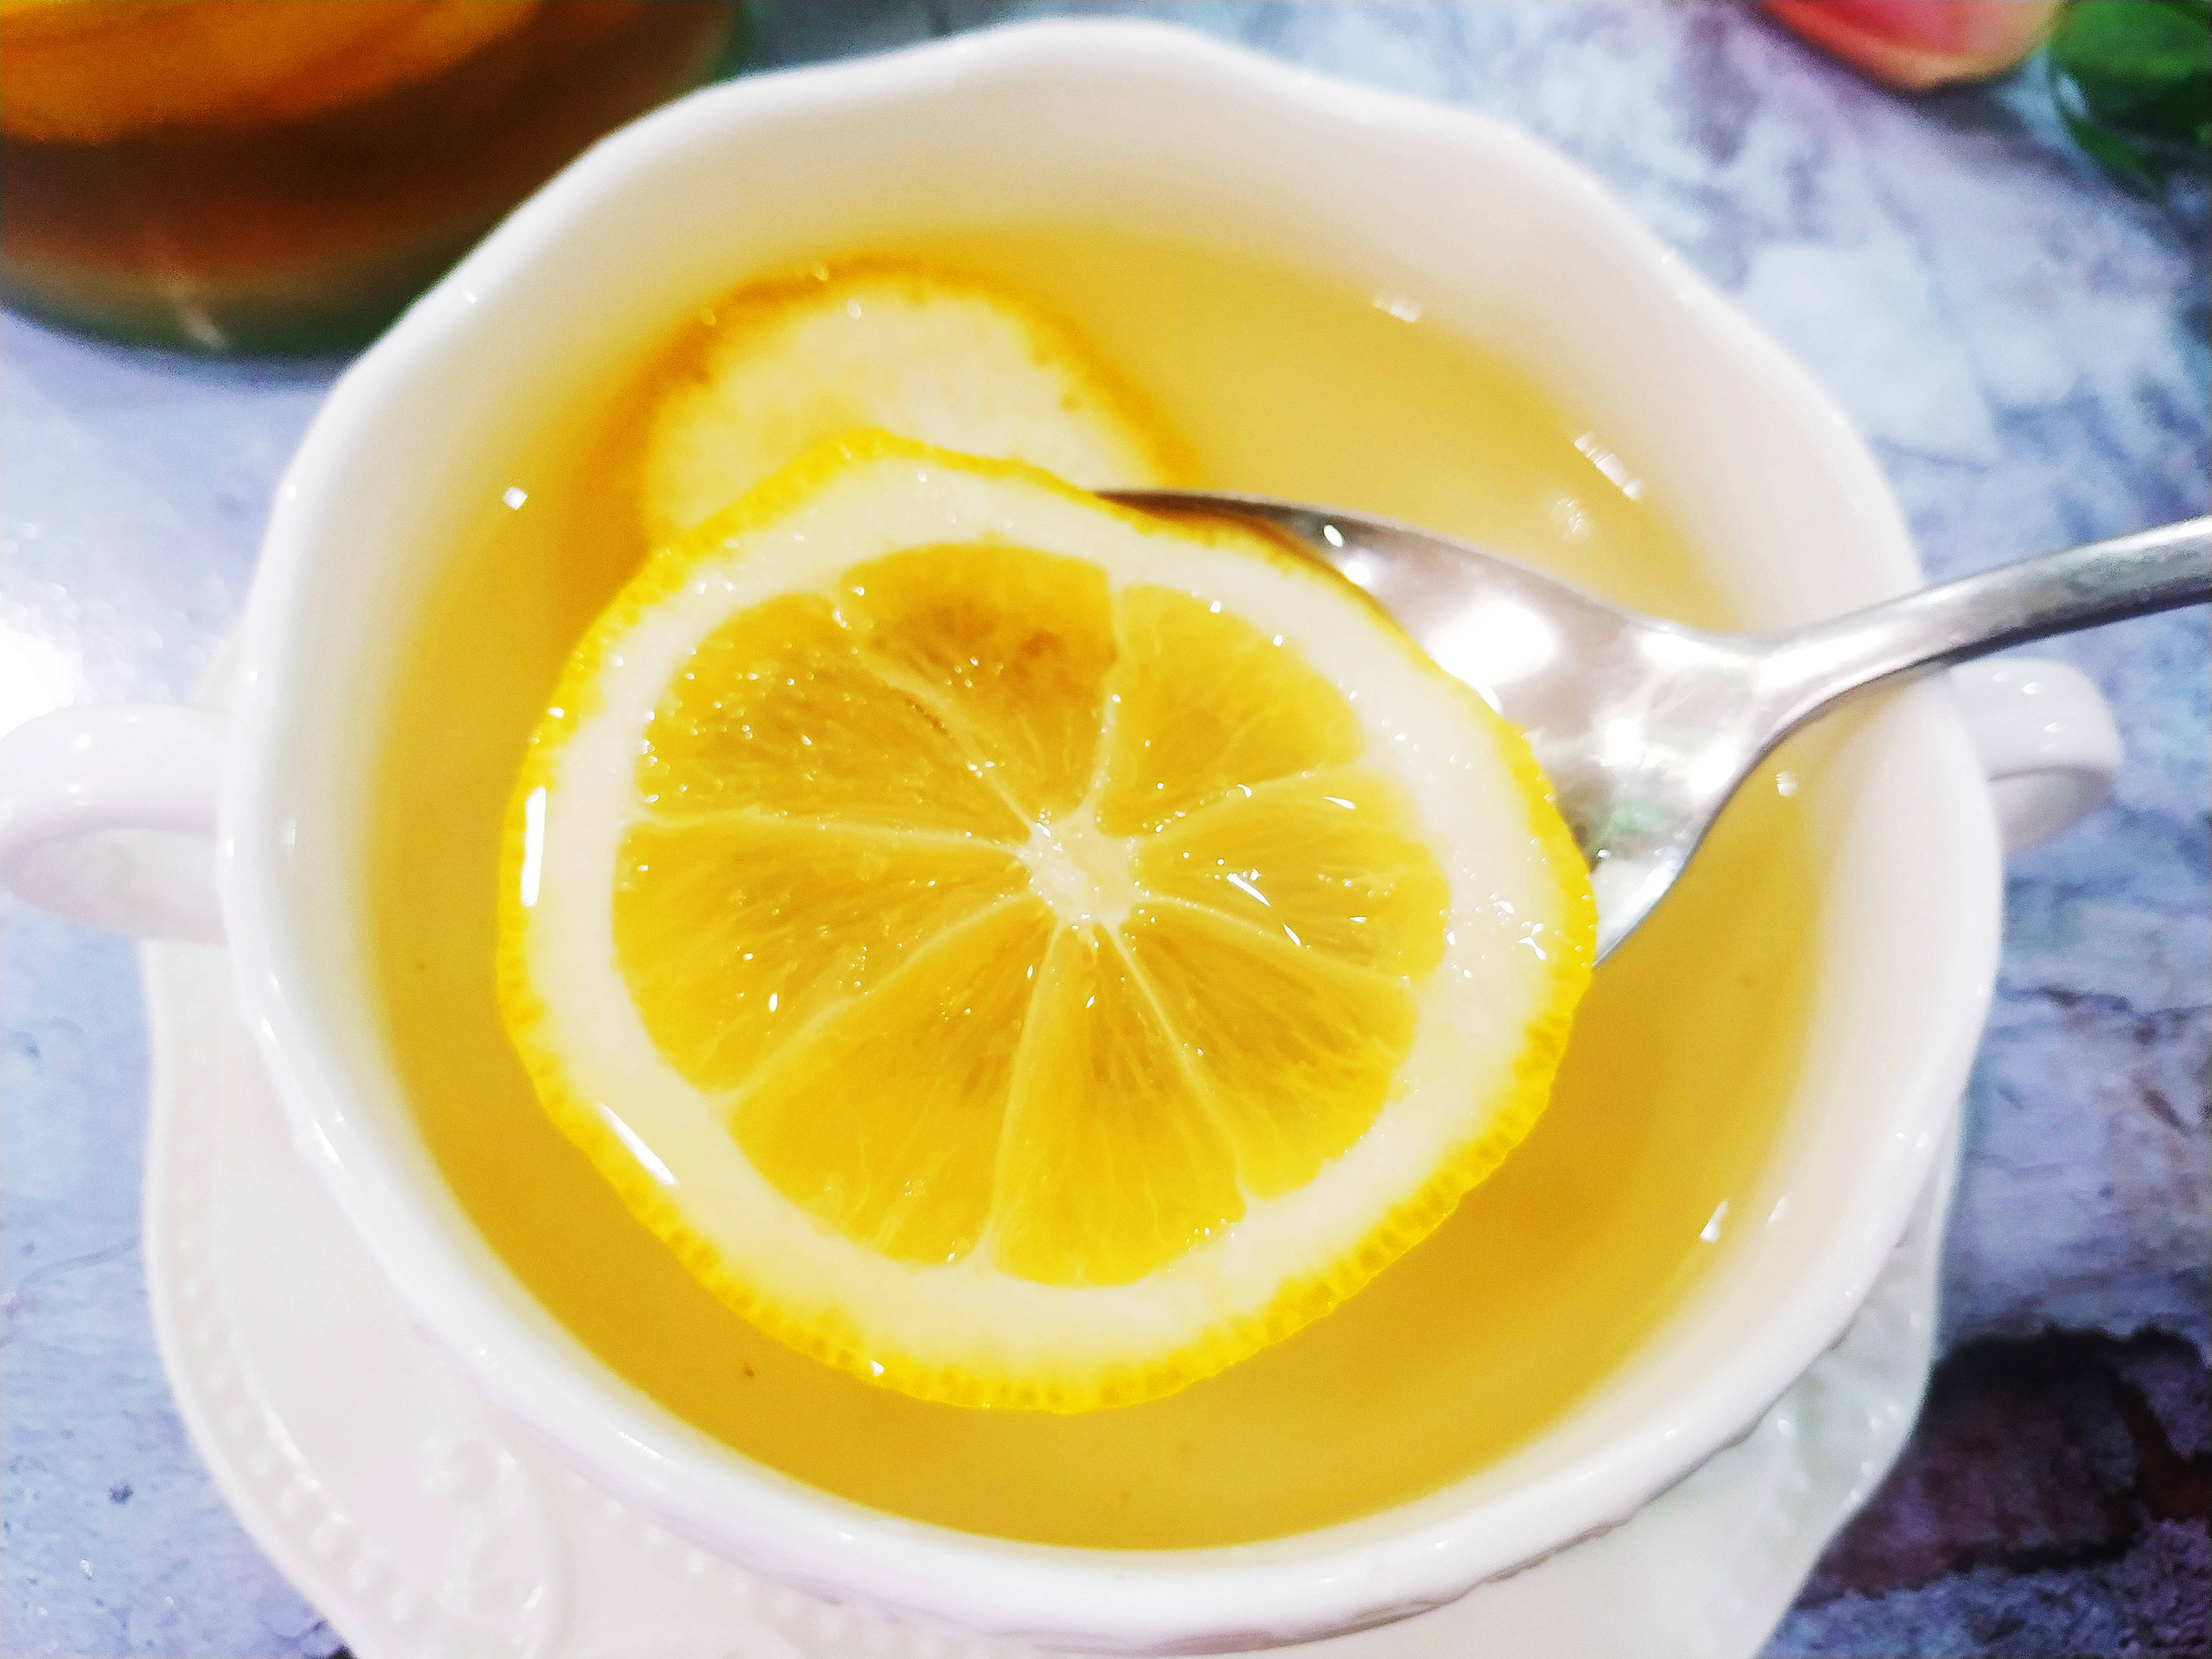 天热多喝蜂蜜柠檬水0添加剂低糖好喝比外卖奶茶更健康